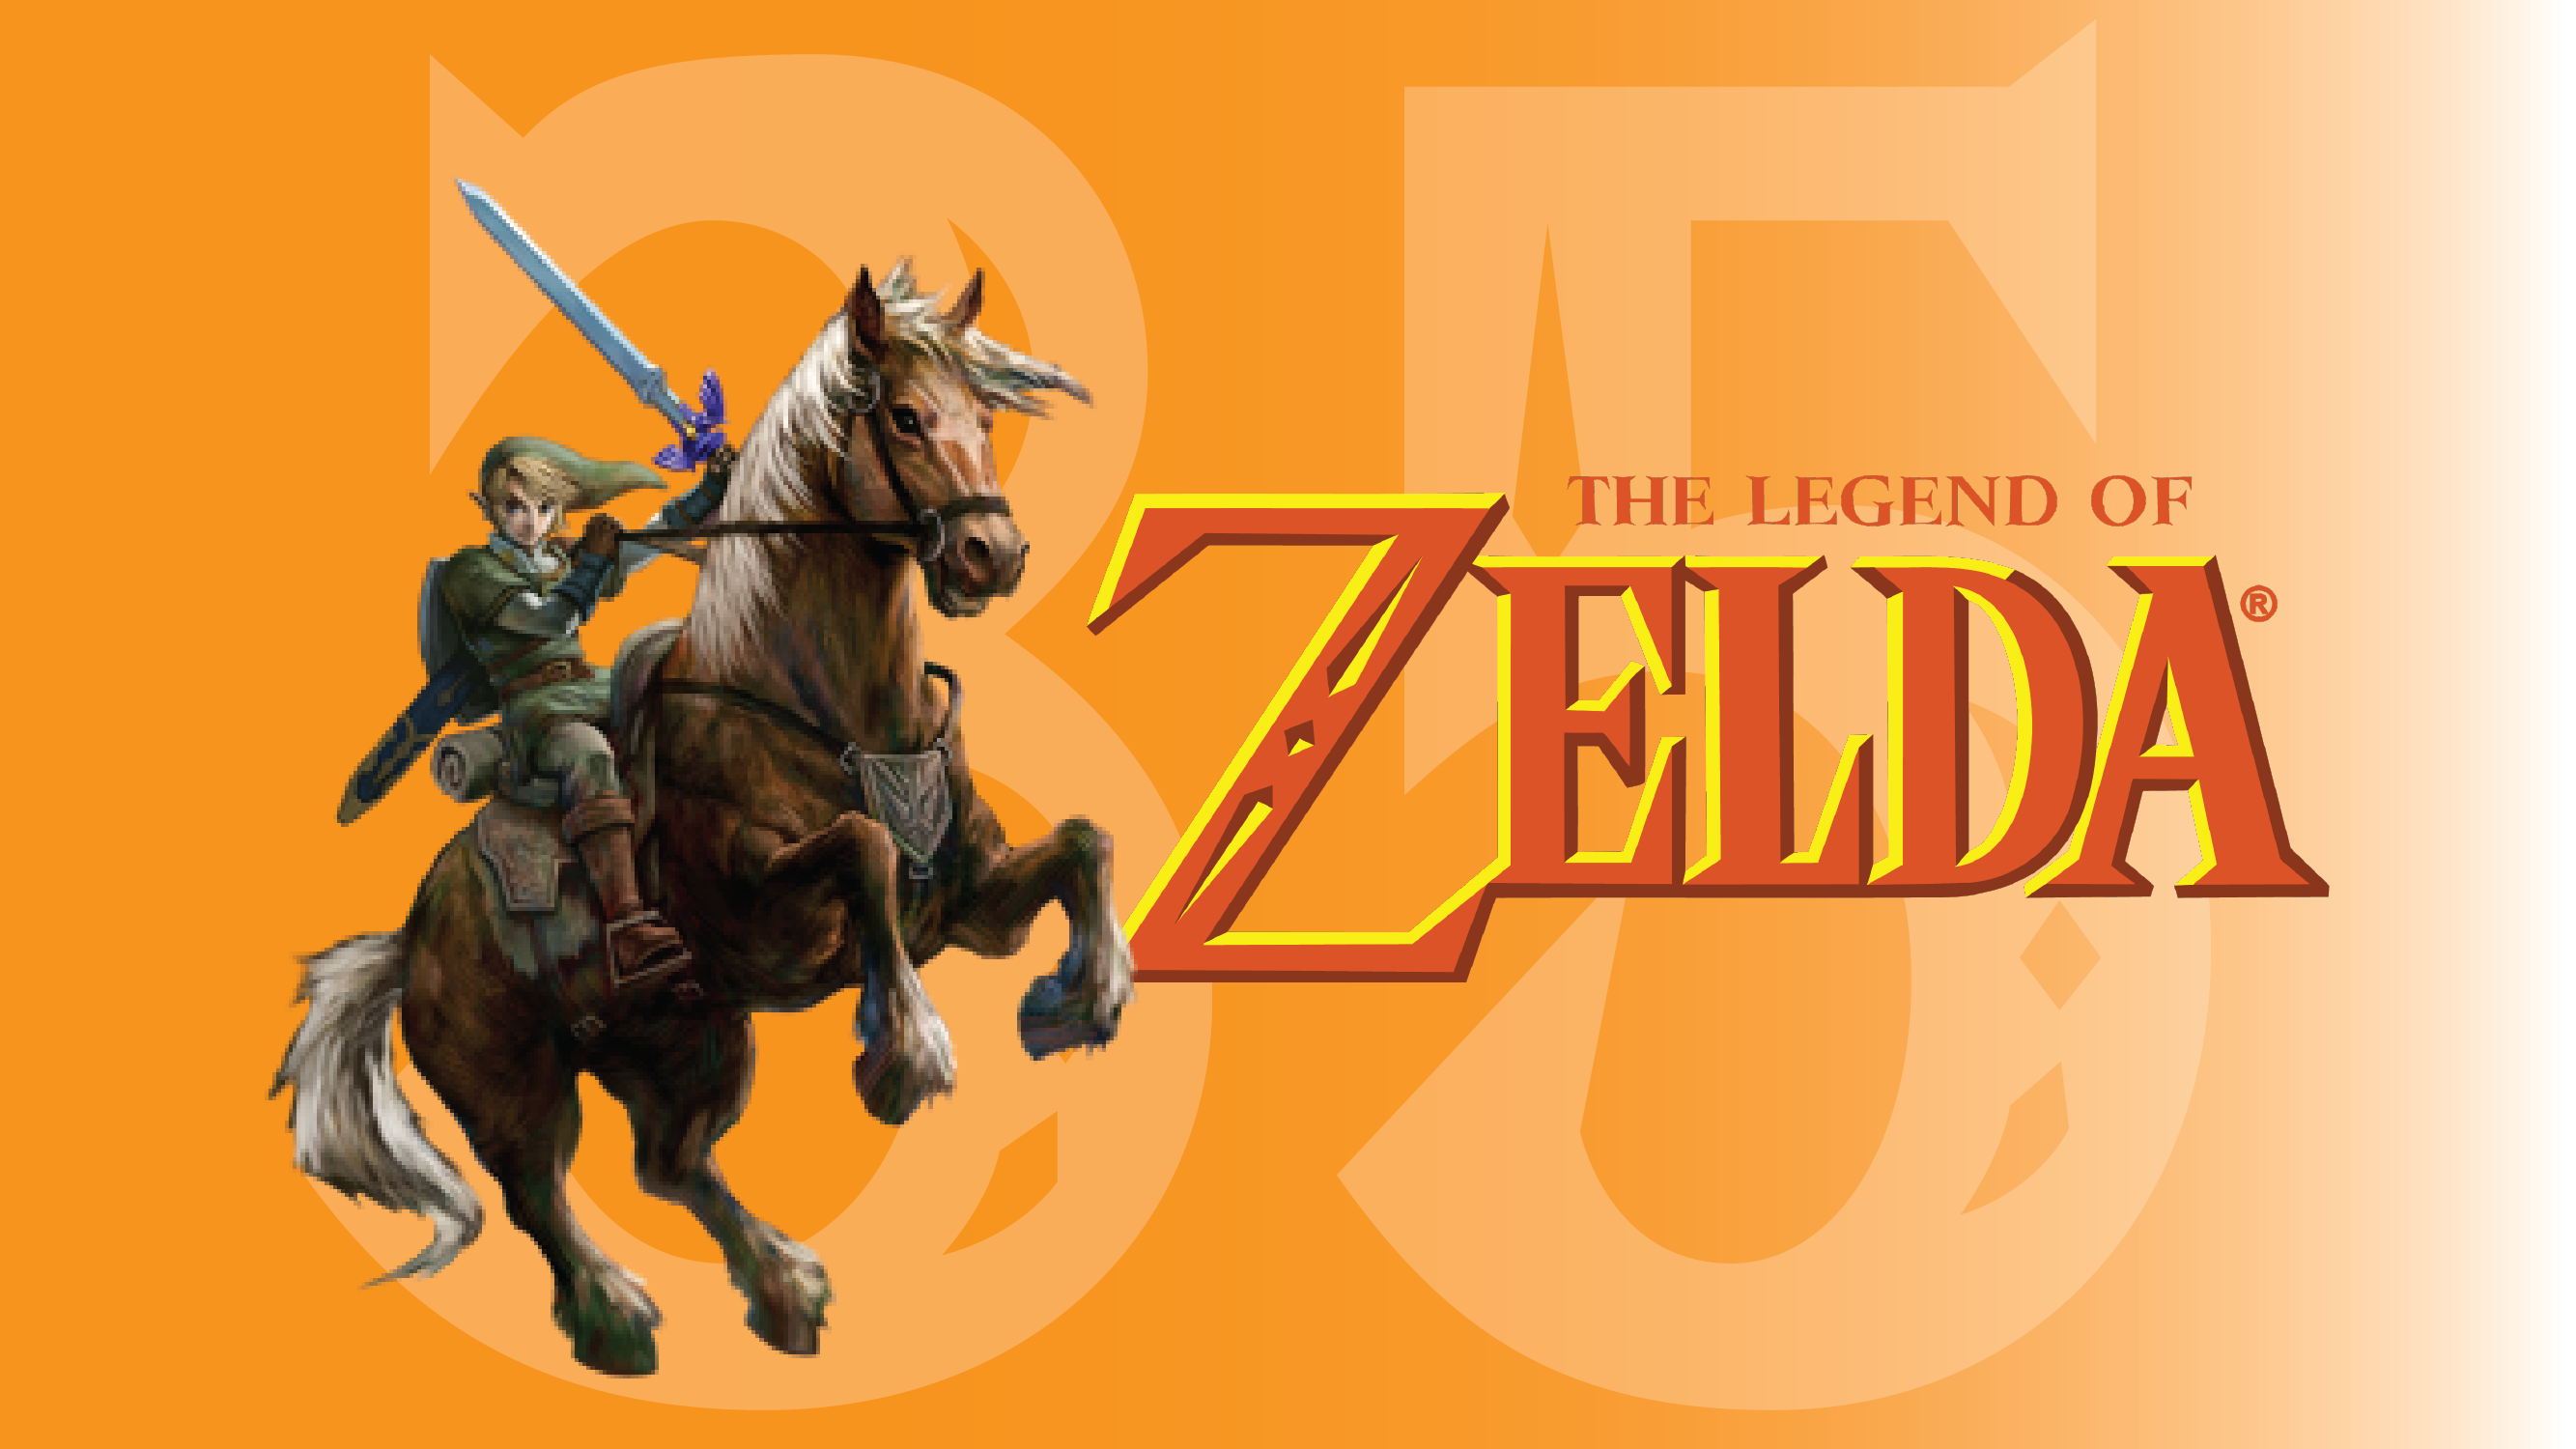 Legends Never Die- Breath of the Wild (Happy 35th, Zelda!) 